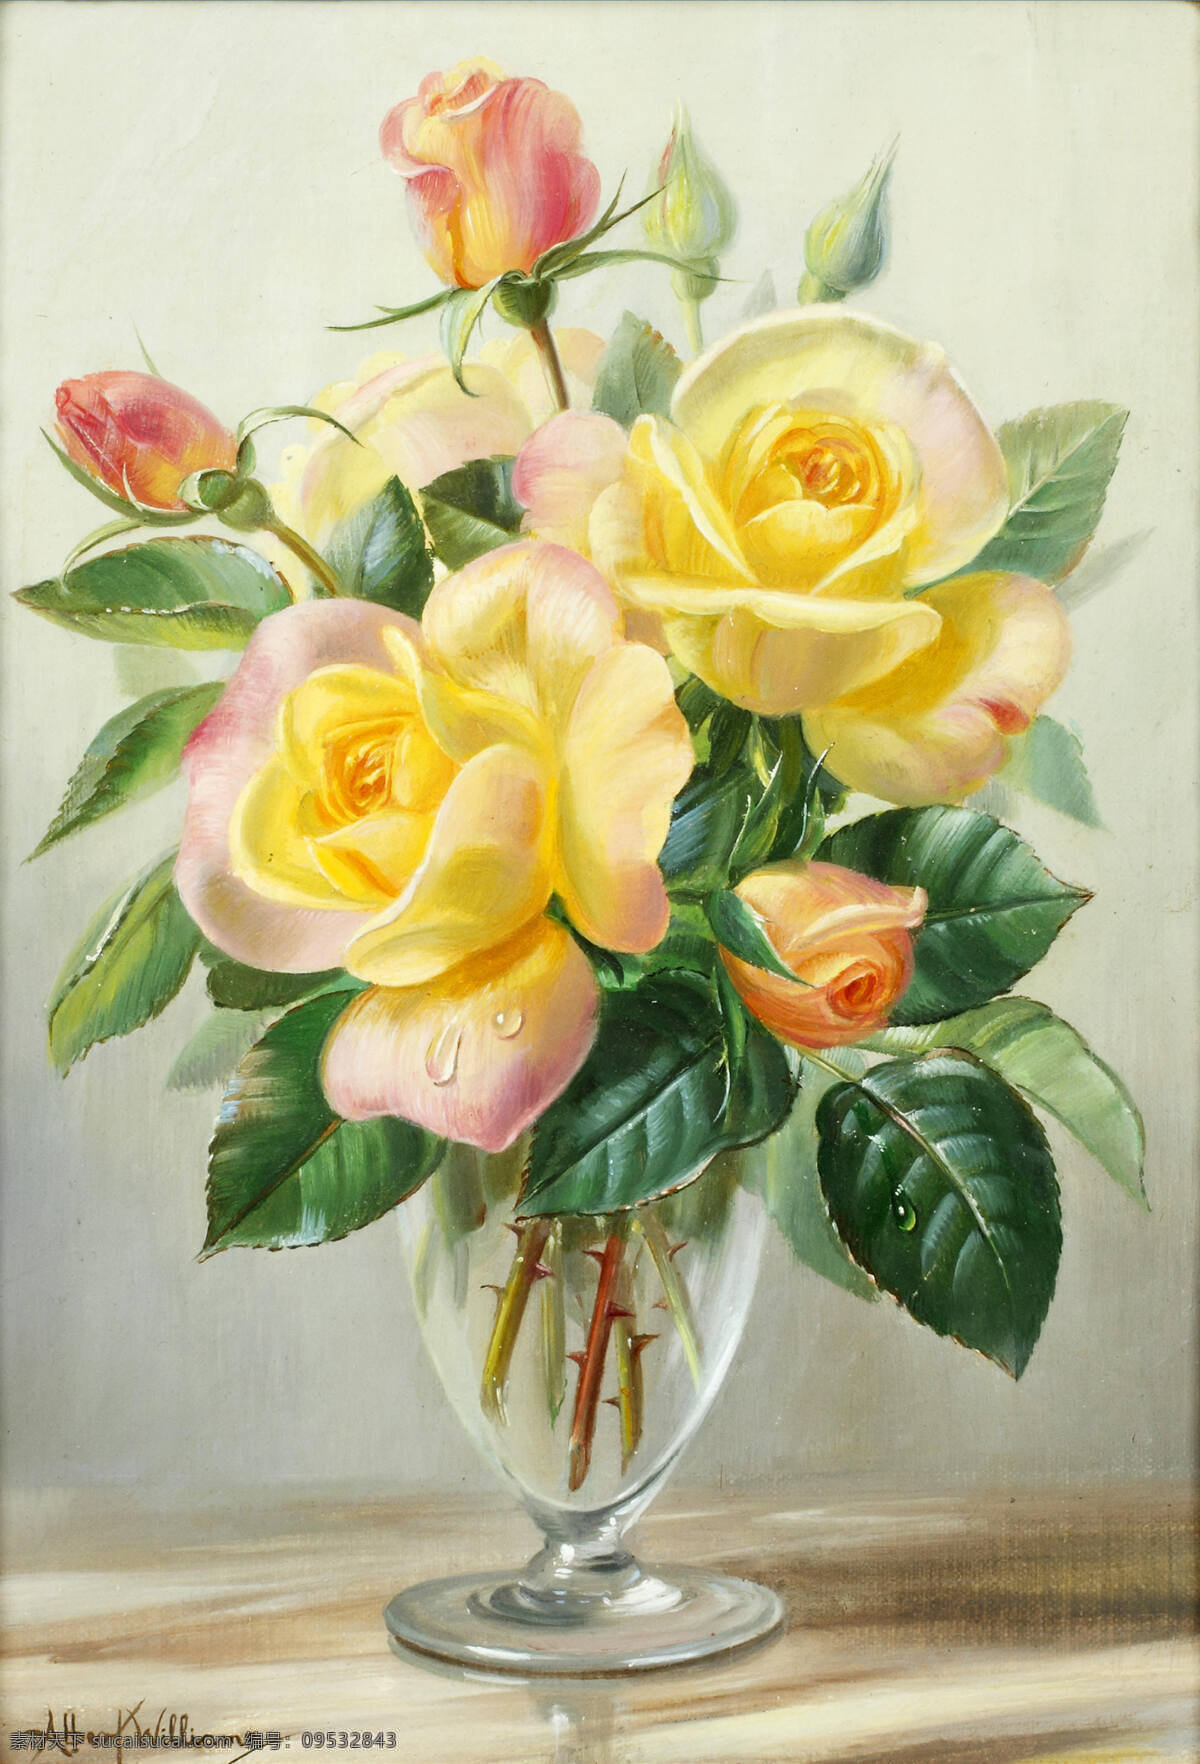 威廉姆作品 阿尔伯特 英国画家 静物花卉 黄玫瑰 玻璃花瓶 20世纪油画 油画 文化艺术 绘画书法